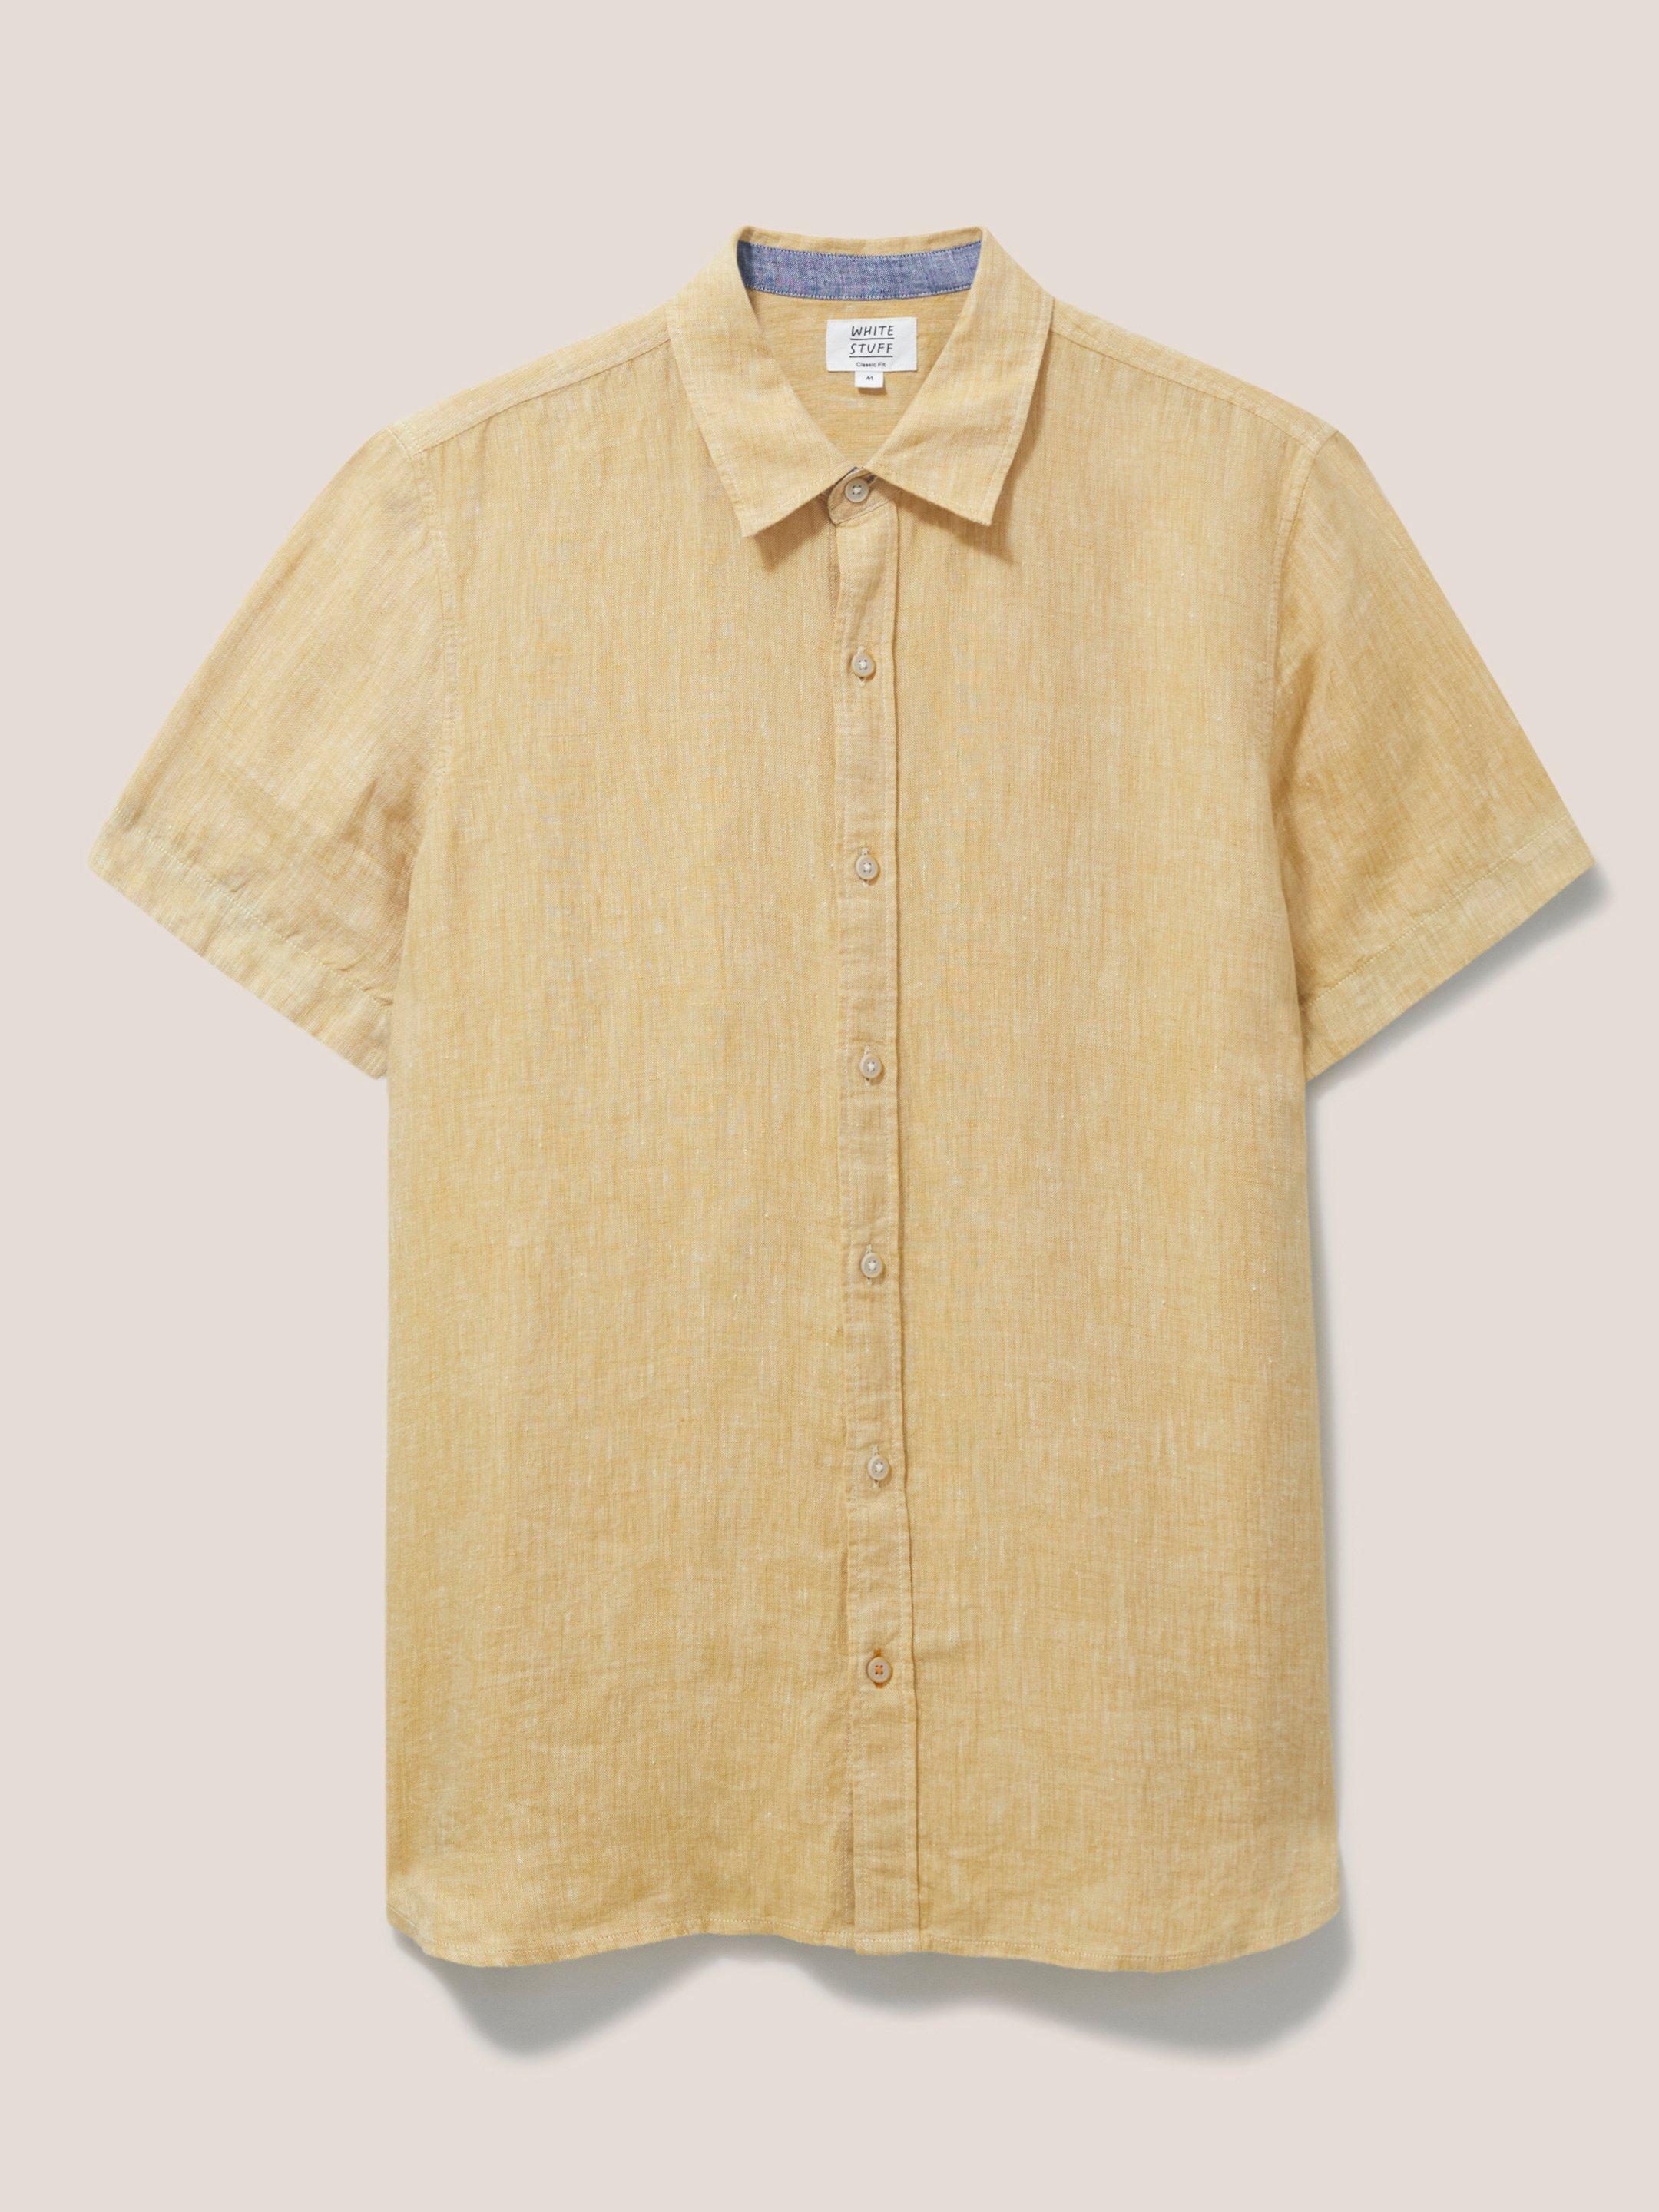 Pembroke SS Linen Shirt in DK YELLOW - FLAT FRONT